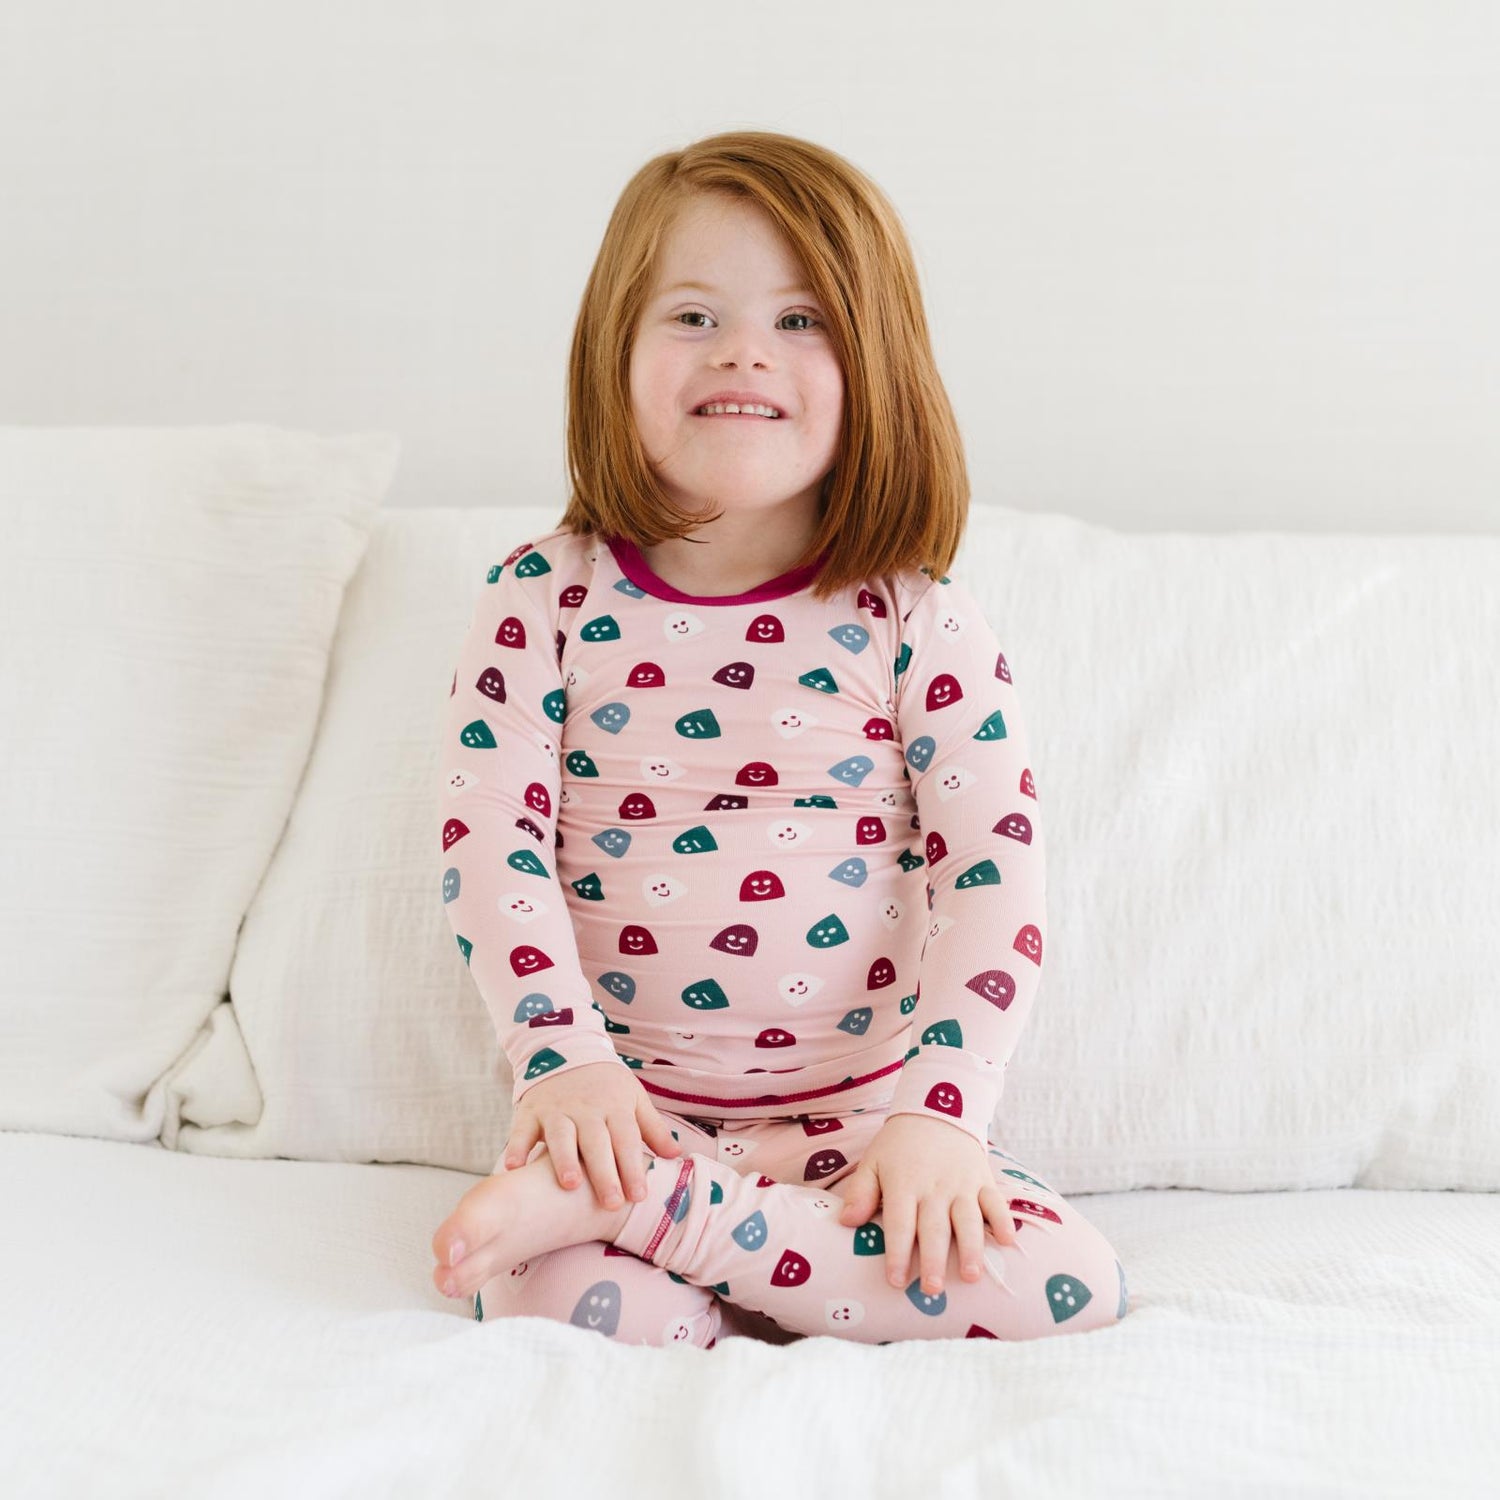 Print Long Sleeve Pajama Set in Baby Rose Happy Gumdrops